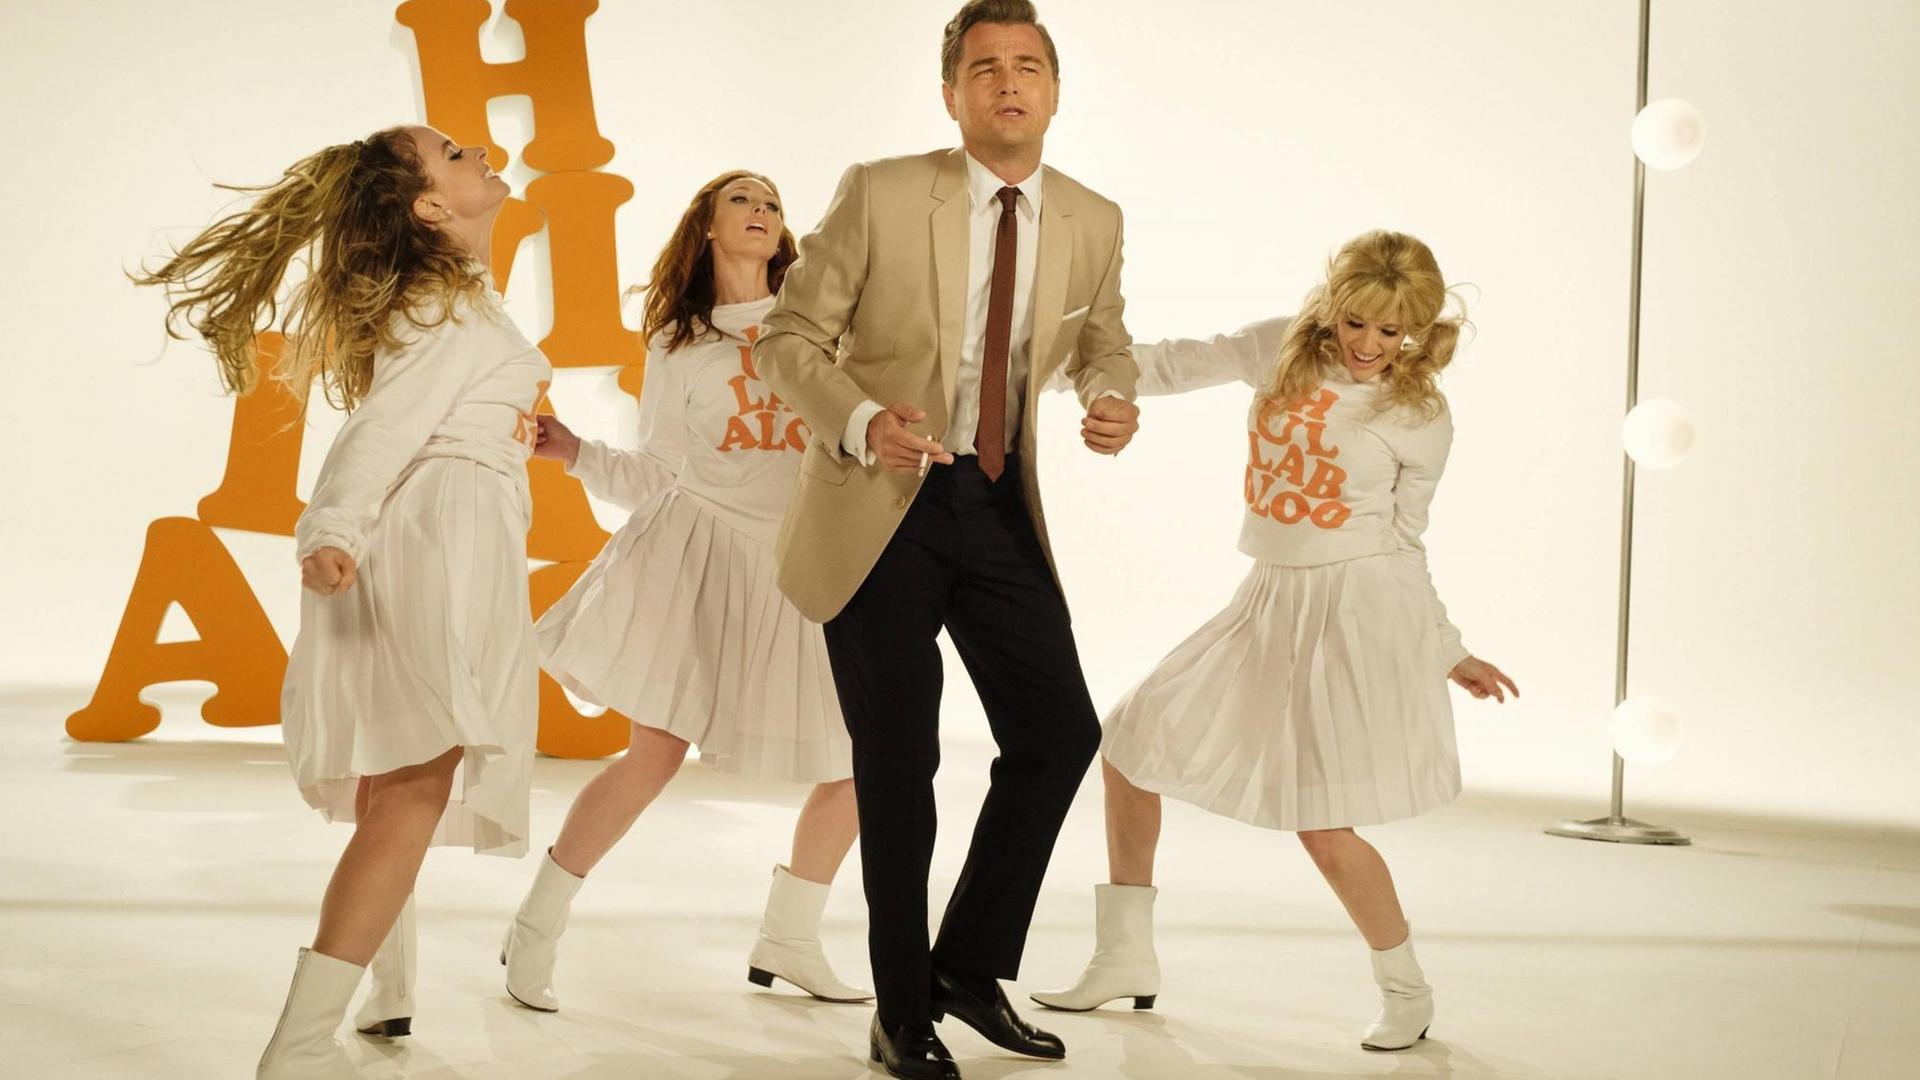 Filmszene aus dem Film "Once Upon a Time in Hollywood Leonardo DiCaprio und drei Frauen tanzen auf einer Bühne